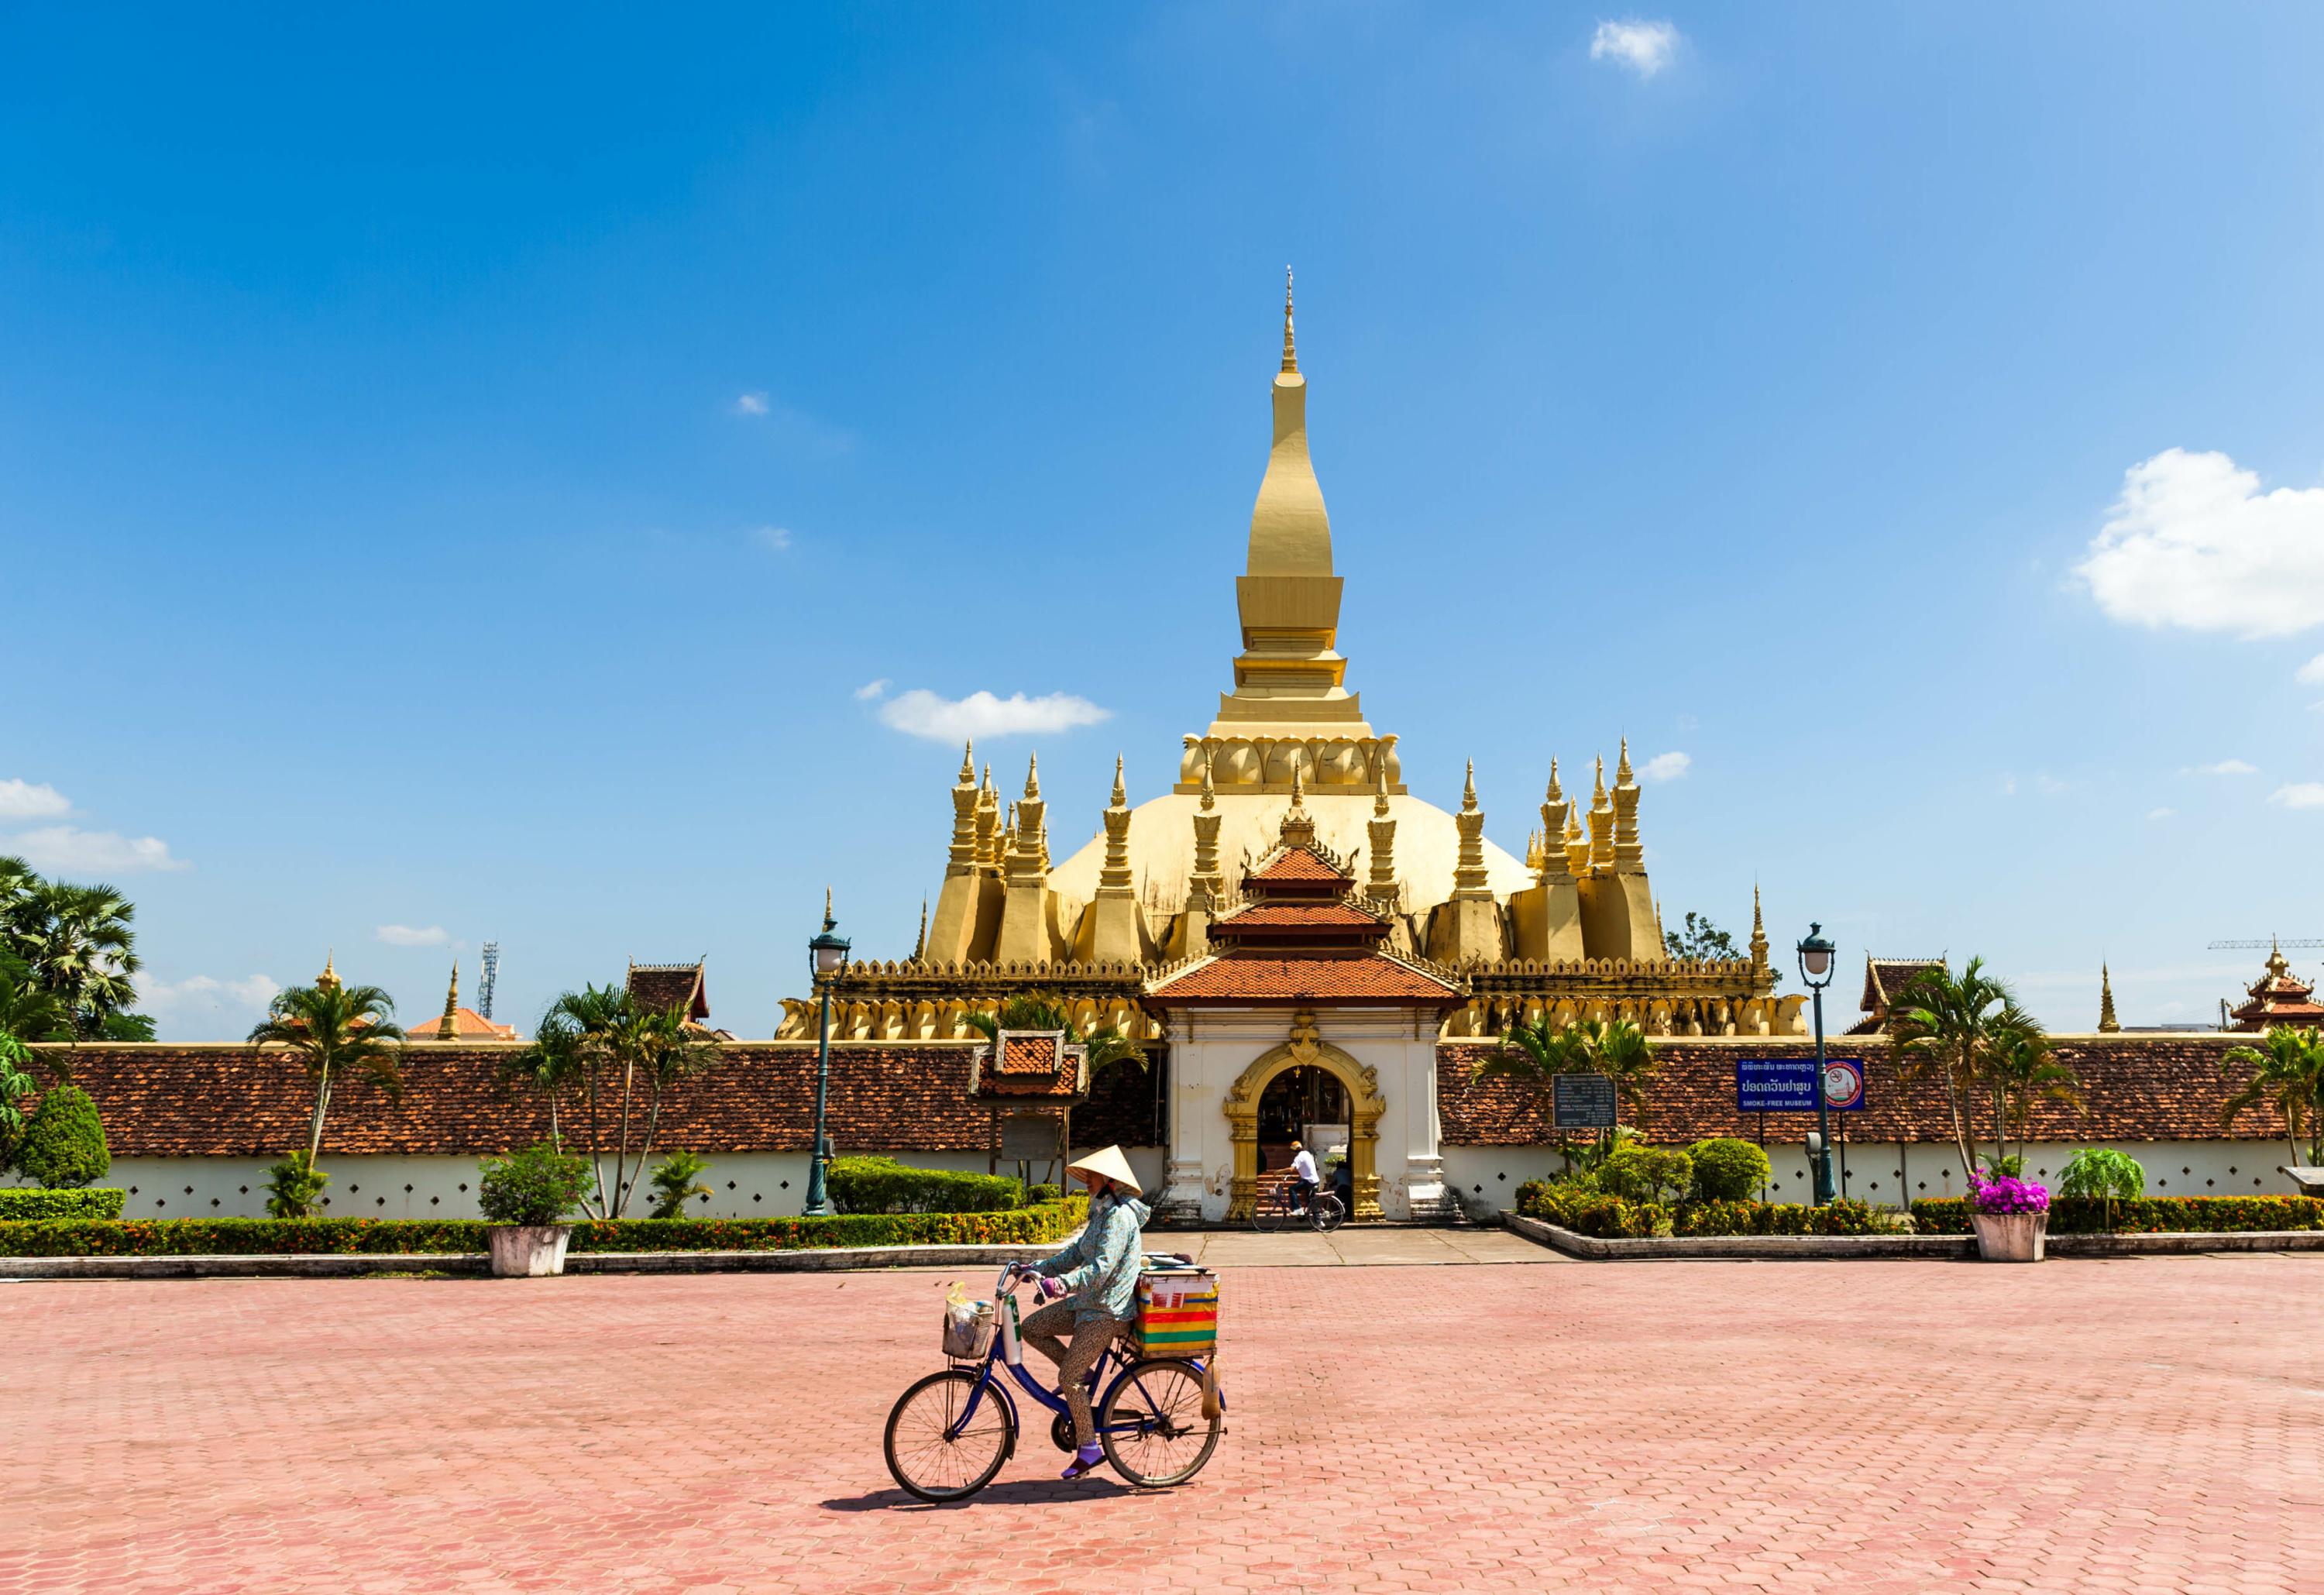 visiter le laos en 10 jours : nos conseils d'itinéraire jour par jour